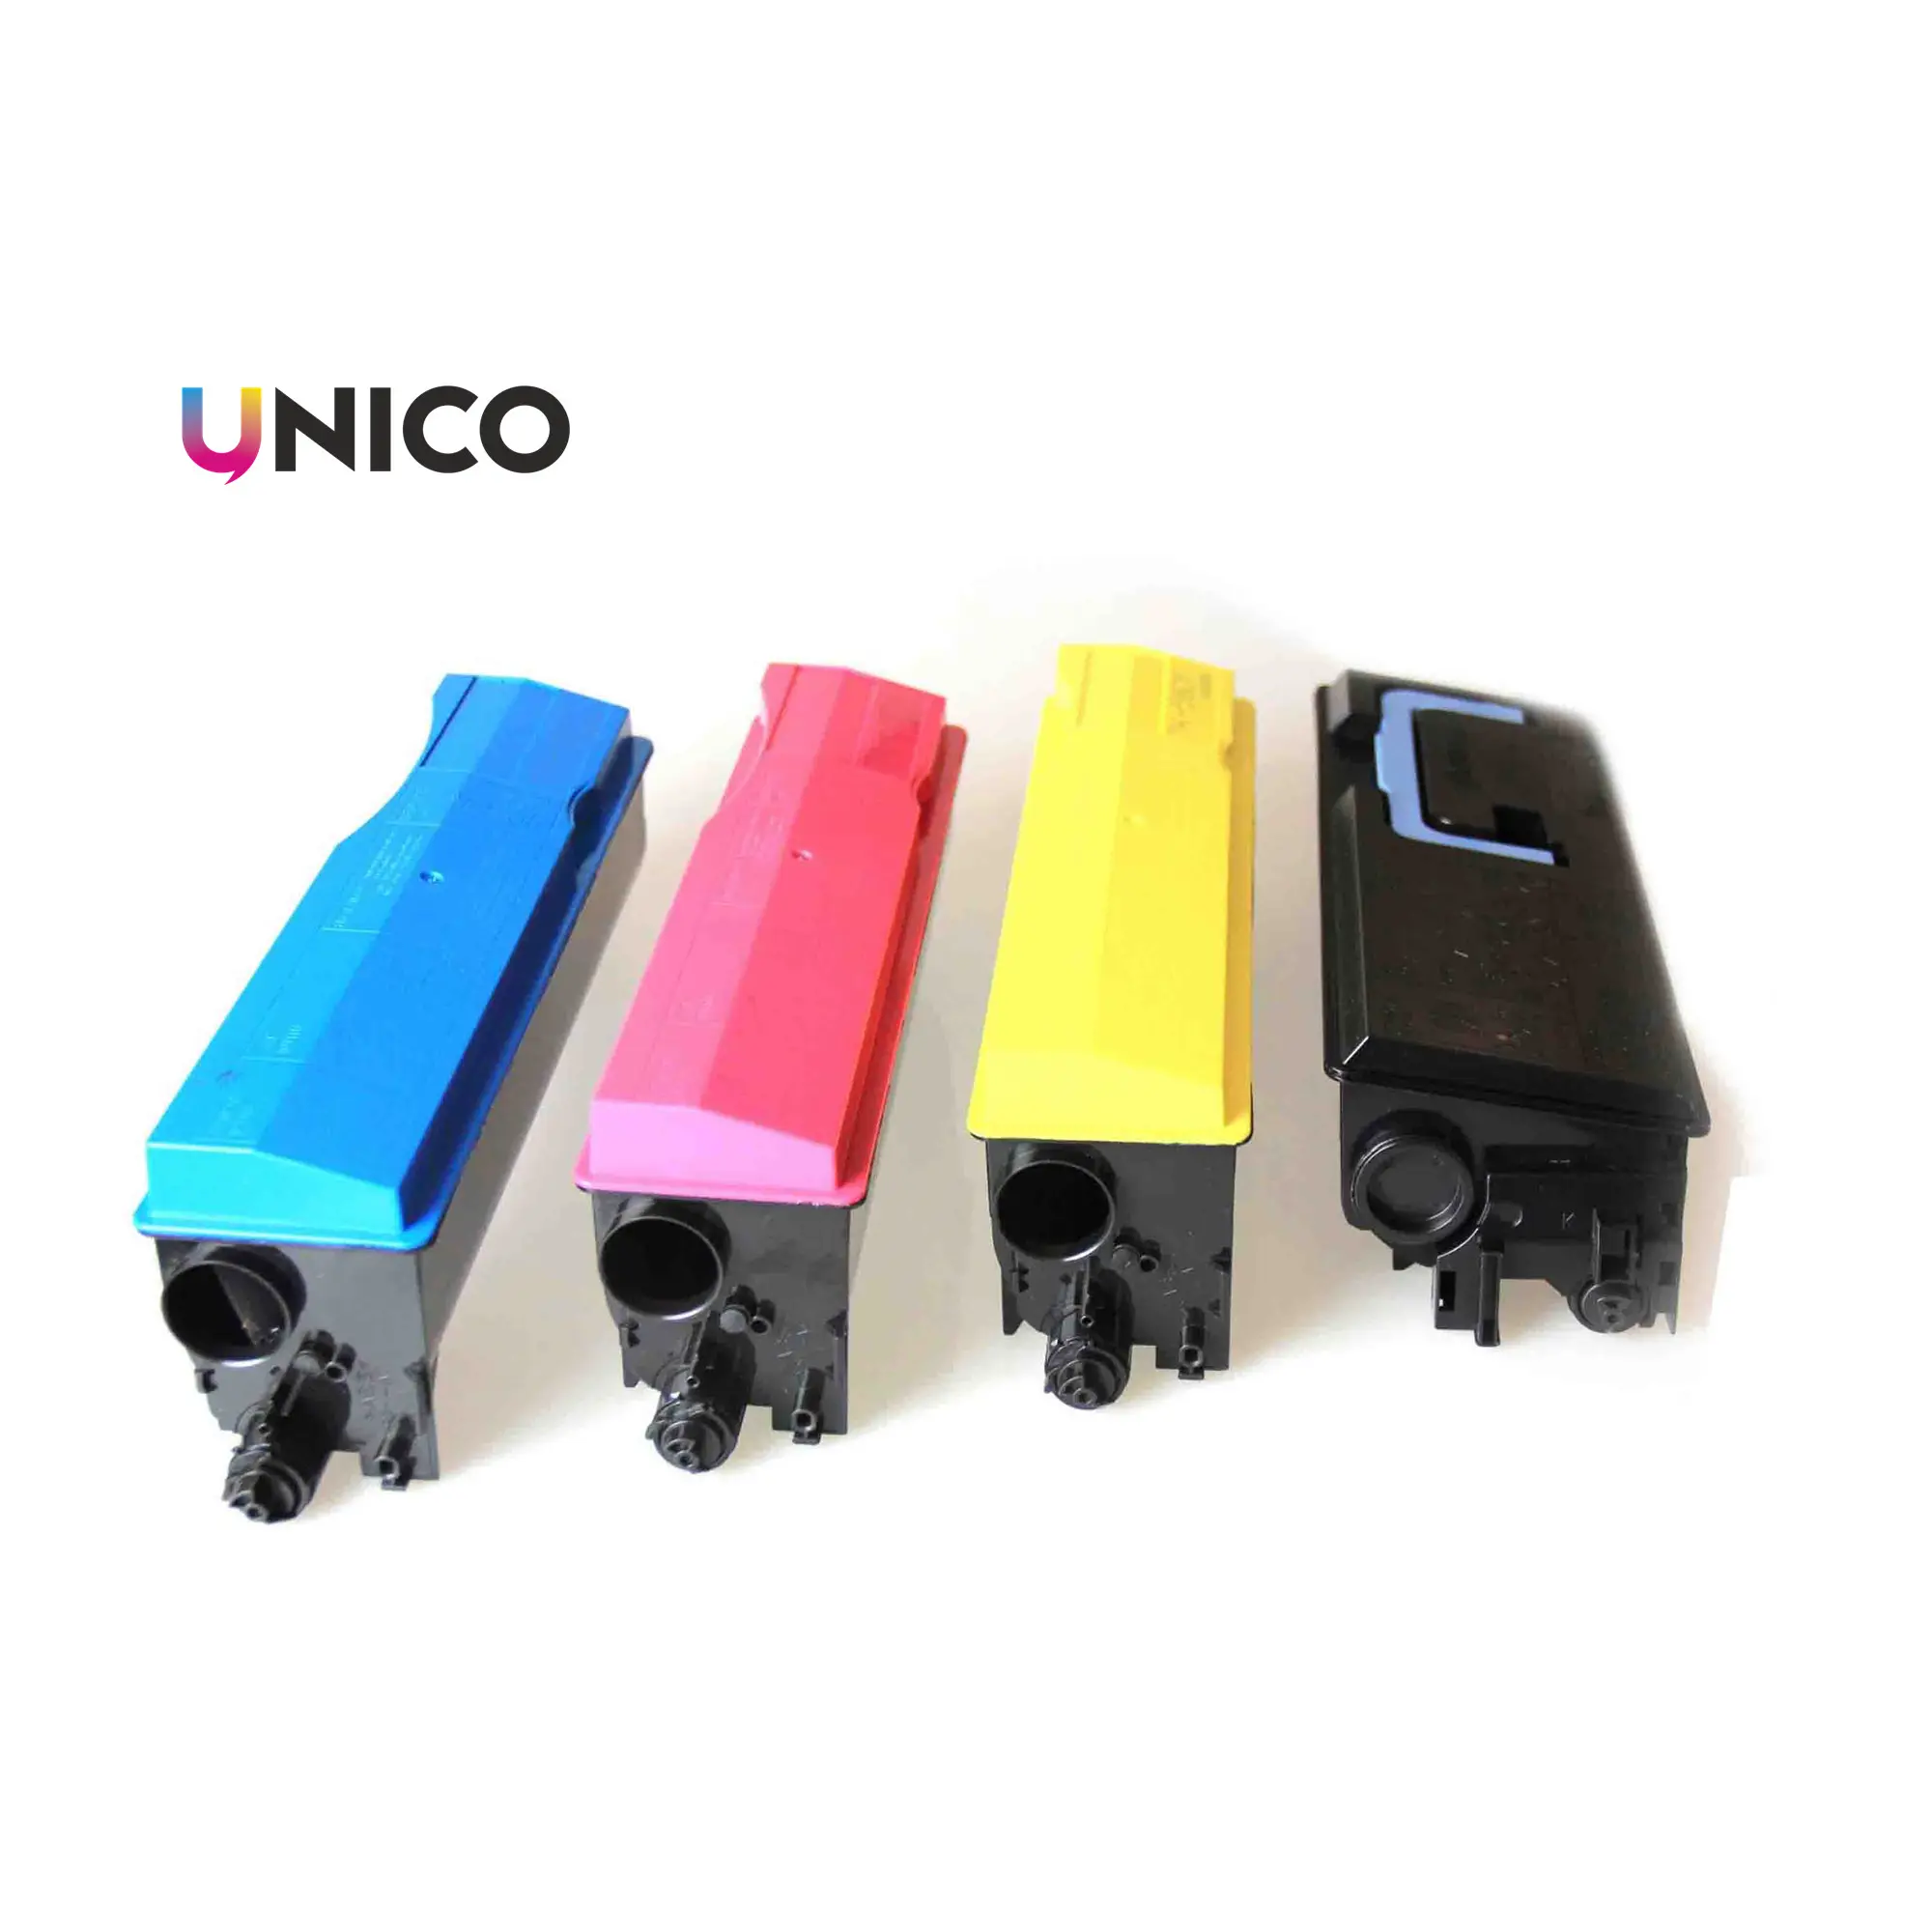 تخفيضات هائلة متوافقة مع UNICO!! للاستخدام في الطابعة طقم حبر Tk550 لون